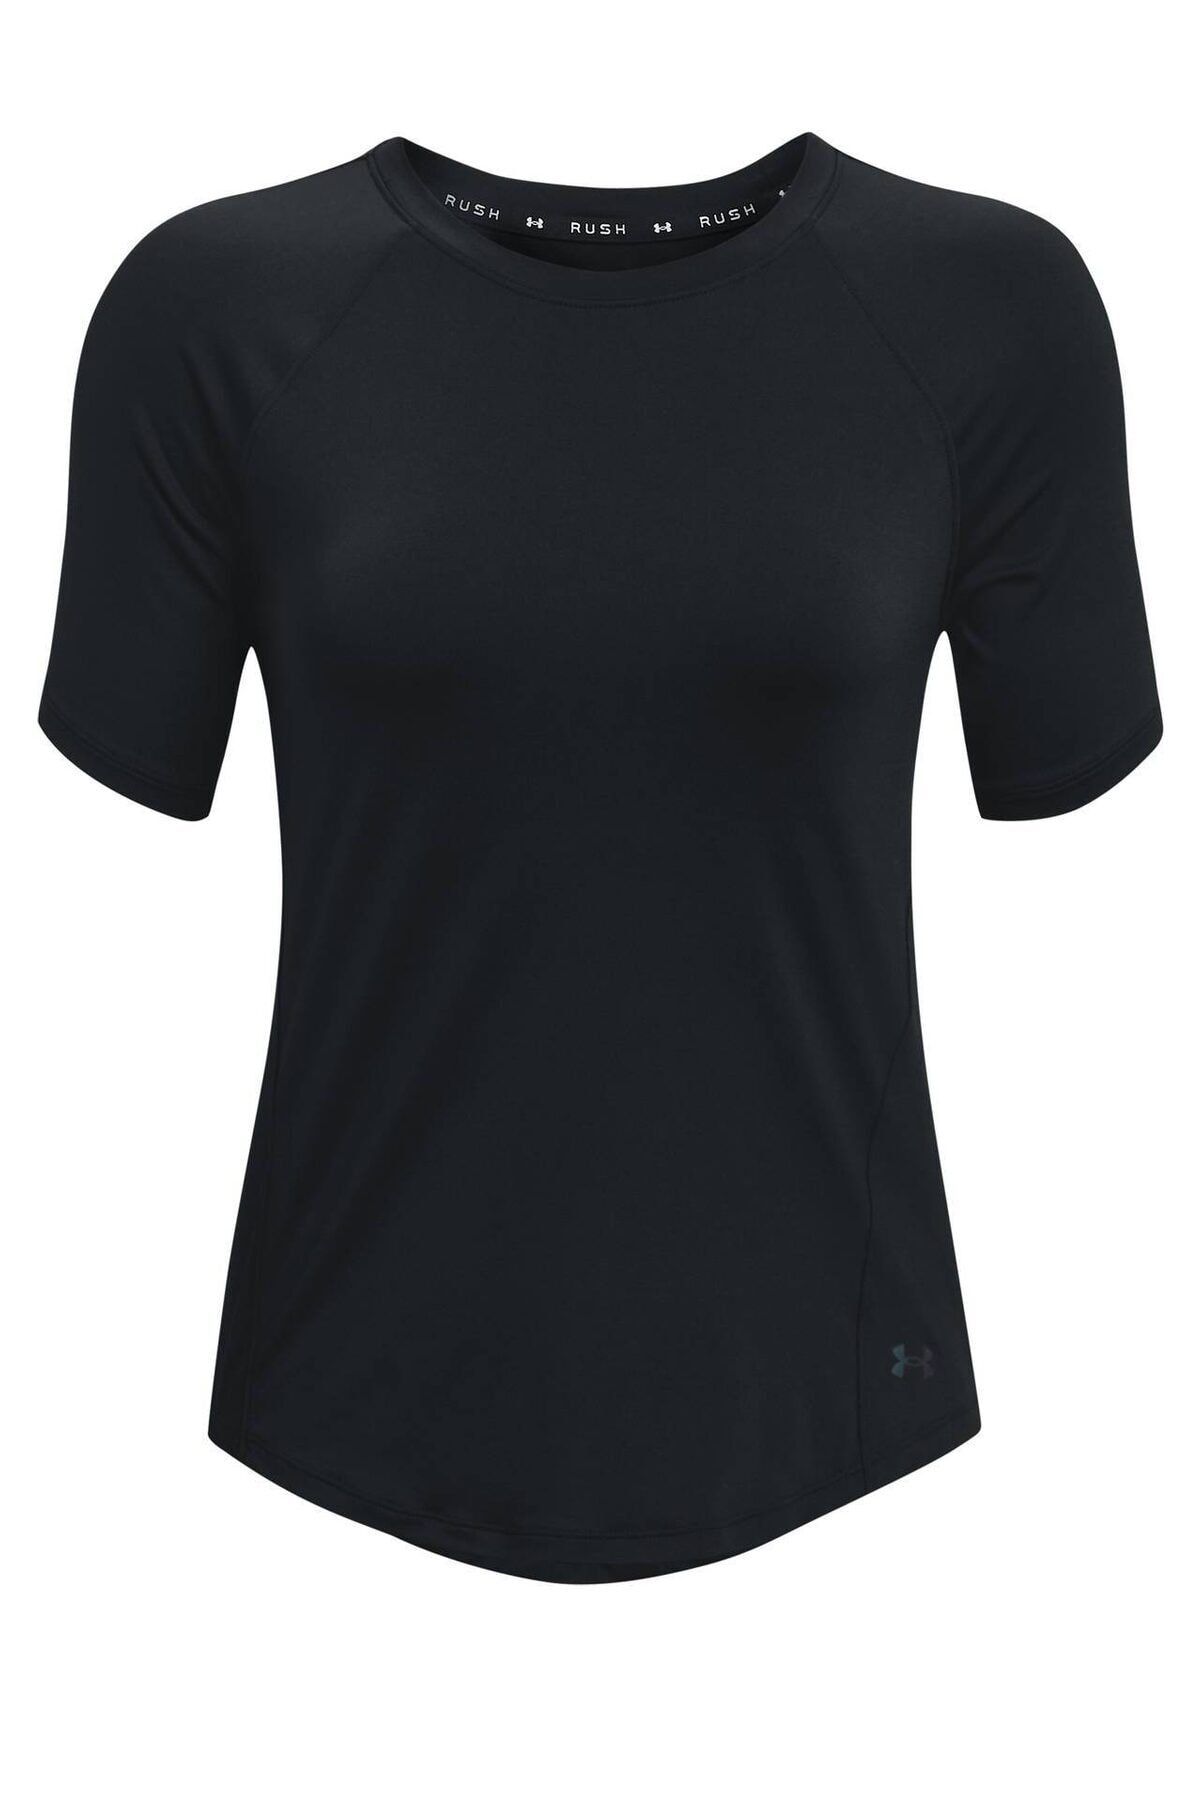 Under Armour Kadın Spor T-Shirt- UA Rush SS - 1368178-001